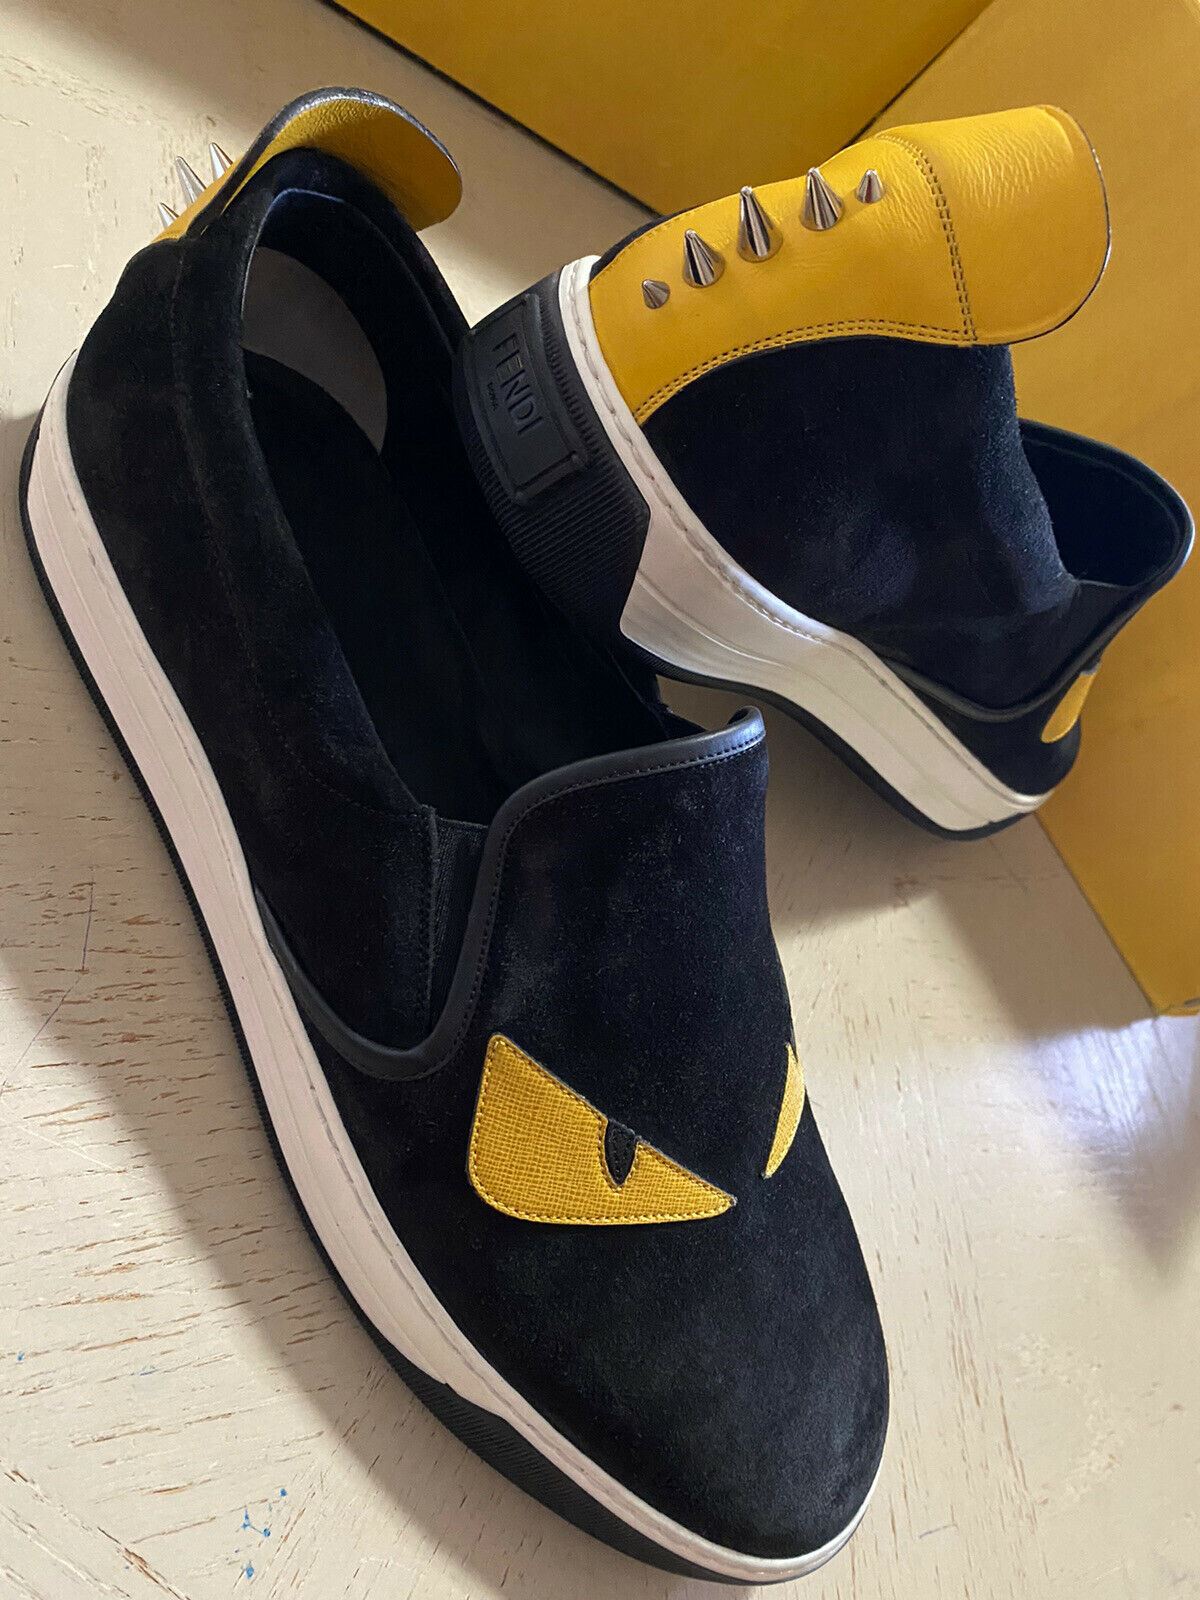 Новые мужские замшевые/кожаные кроссовки Fendi за 700 долларов США, черные/желтые 12, США, Италия